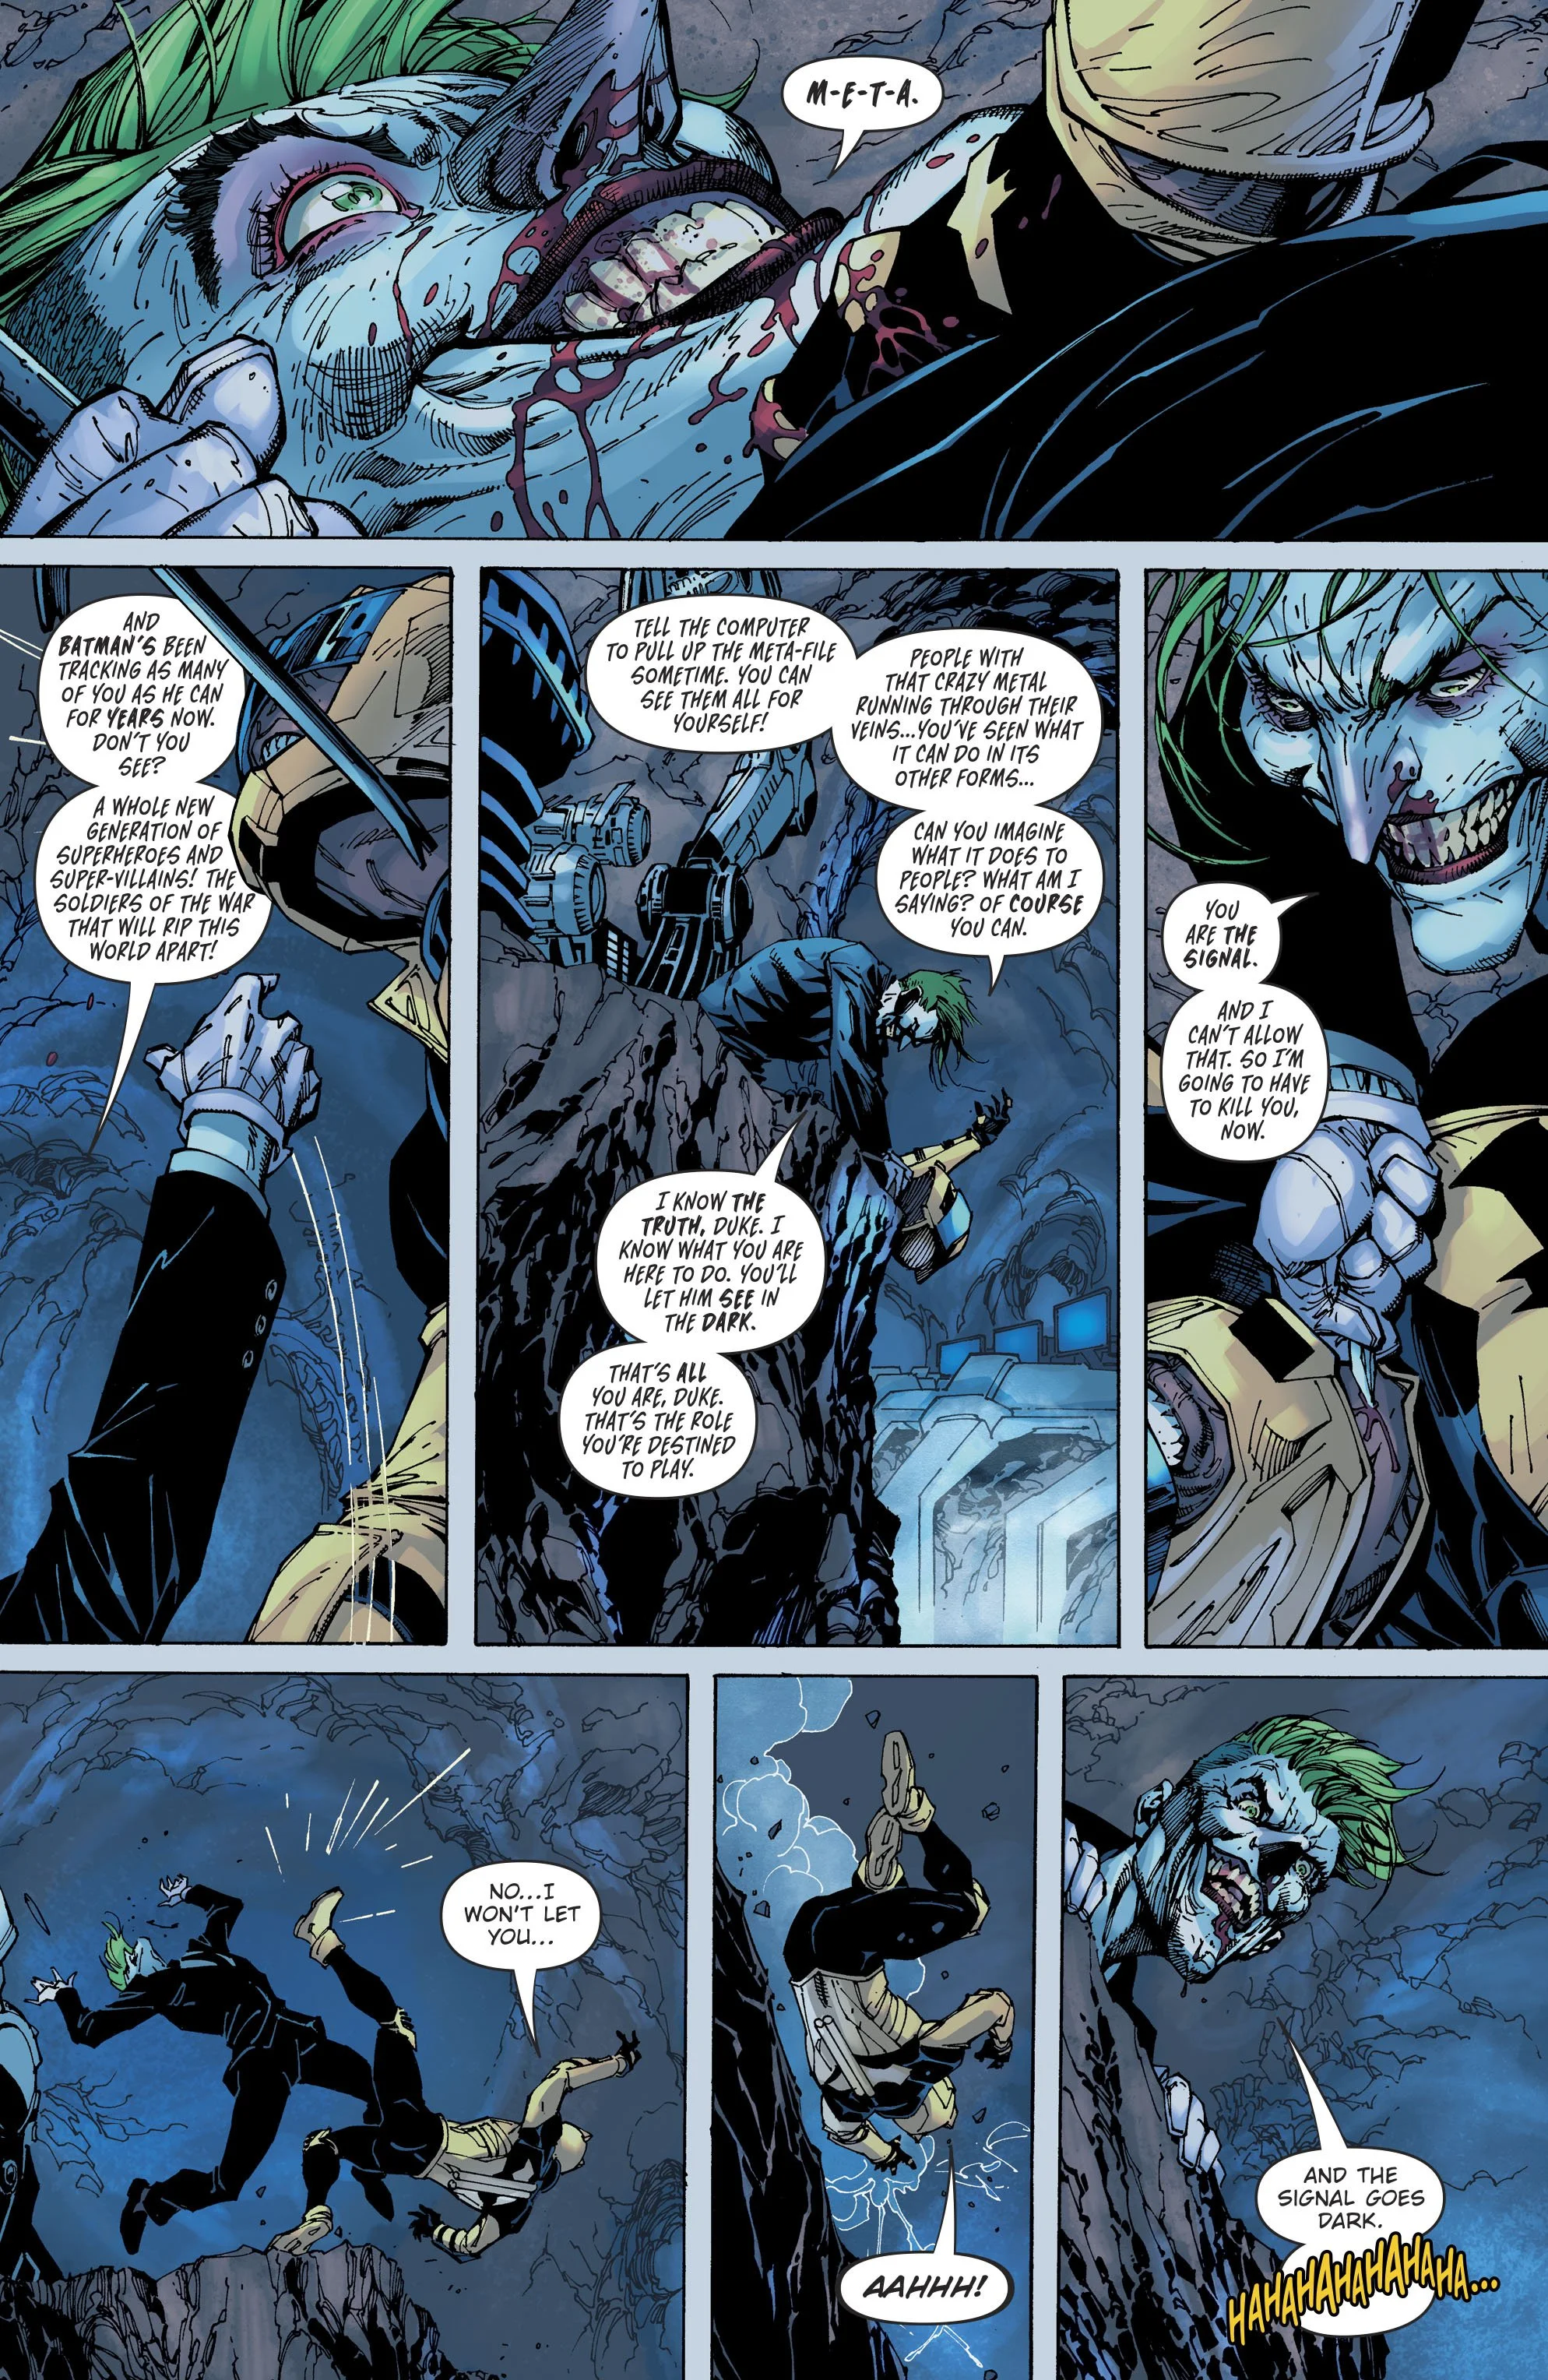 В комиксах DC назревает новый кризис, и виноват в нем Бэтмен - фото 2